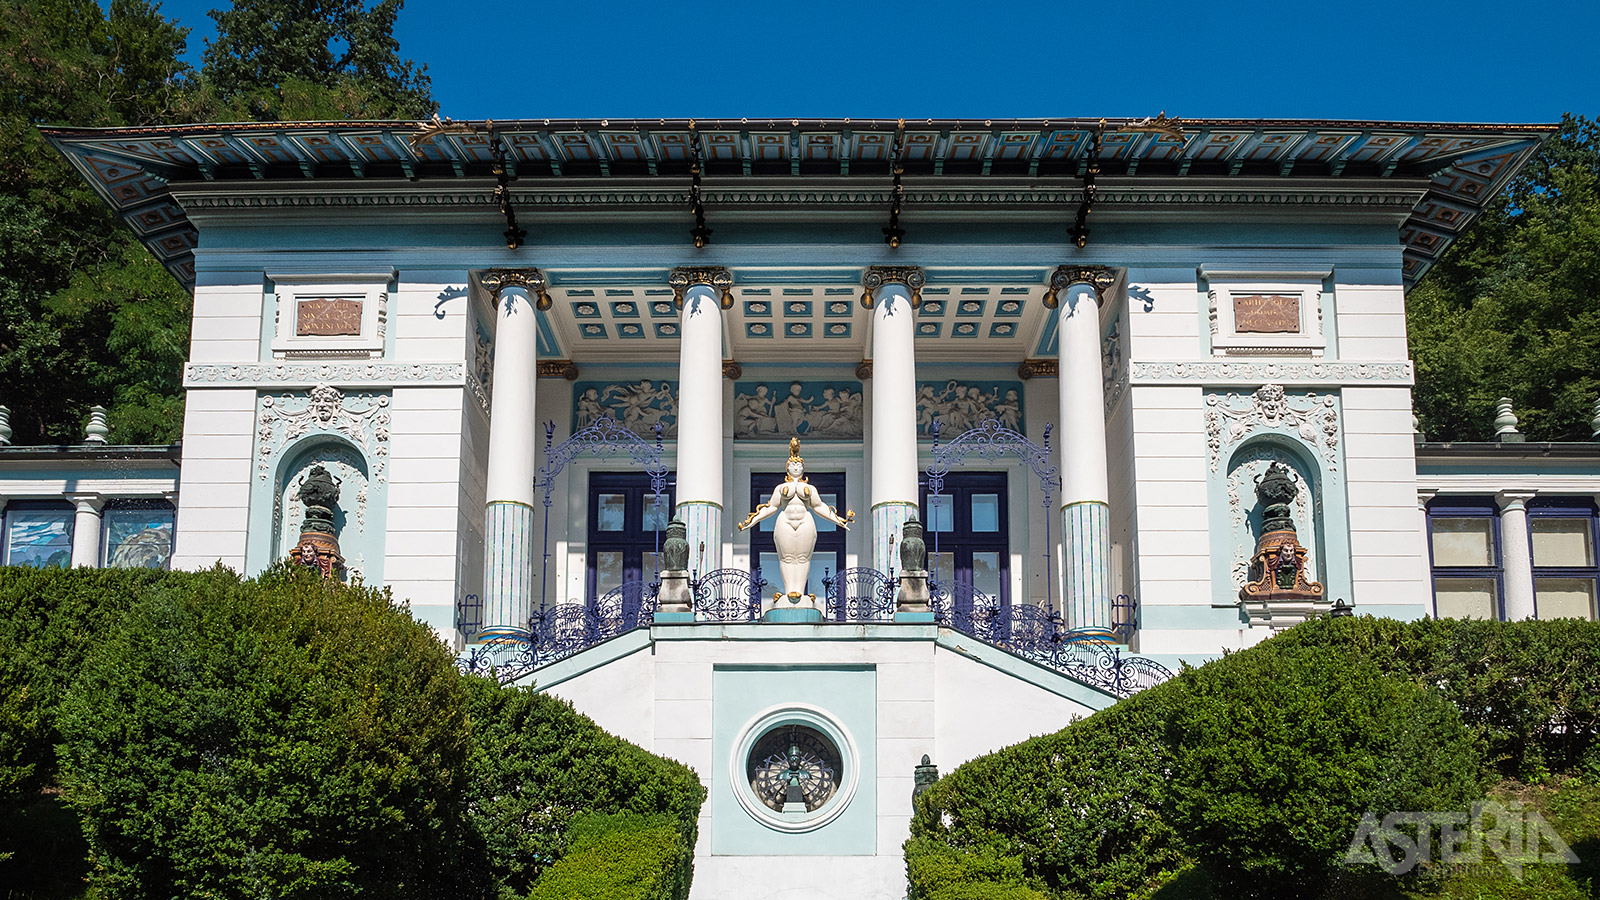 De villa van Ernst Fuchs, gebouwd in 1888 naar een ontwerp van Otto Wagner in Jugendstil met elementen uit de Oud-Griekse architectuur